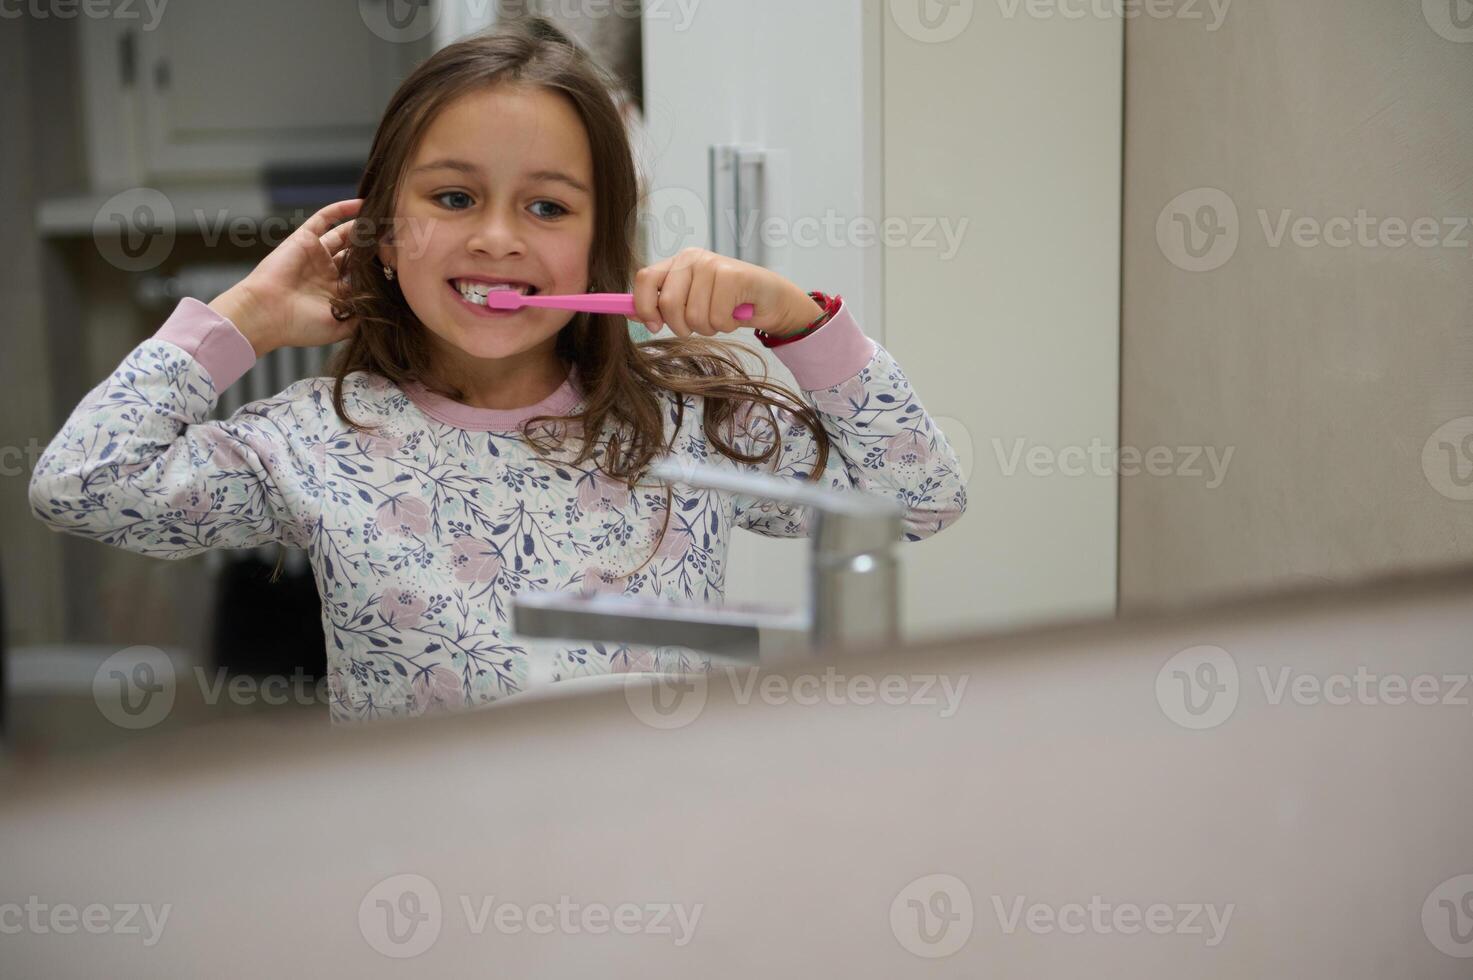 réflexion dans le salle de bains miroir de une mignonne enfant fille brossage dents, habillé dans pyjamas. dentaire hygiène et oral se soucier photo